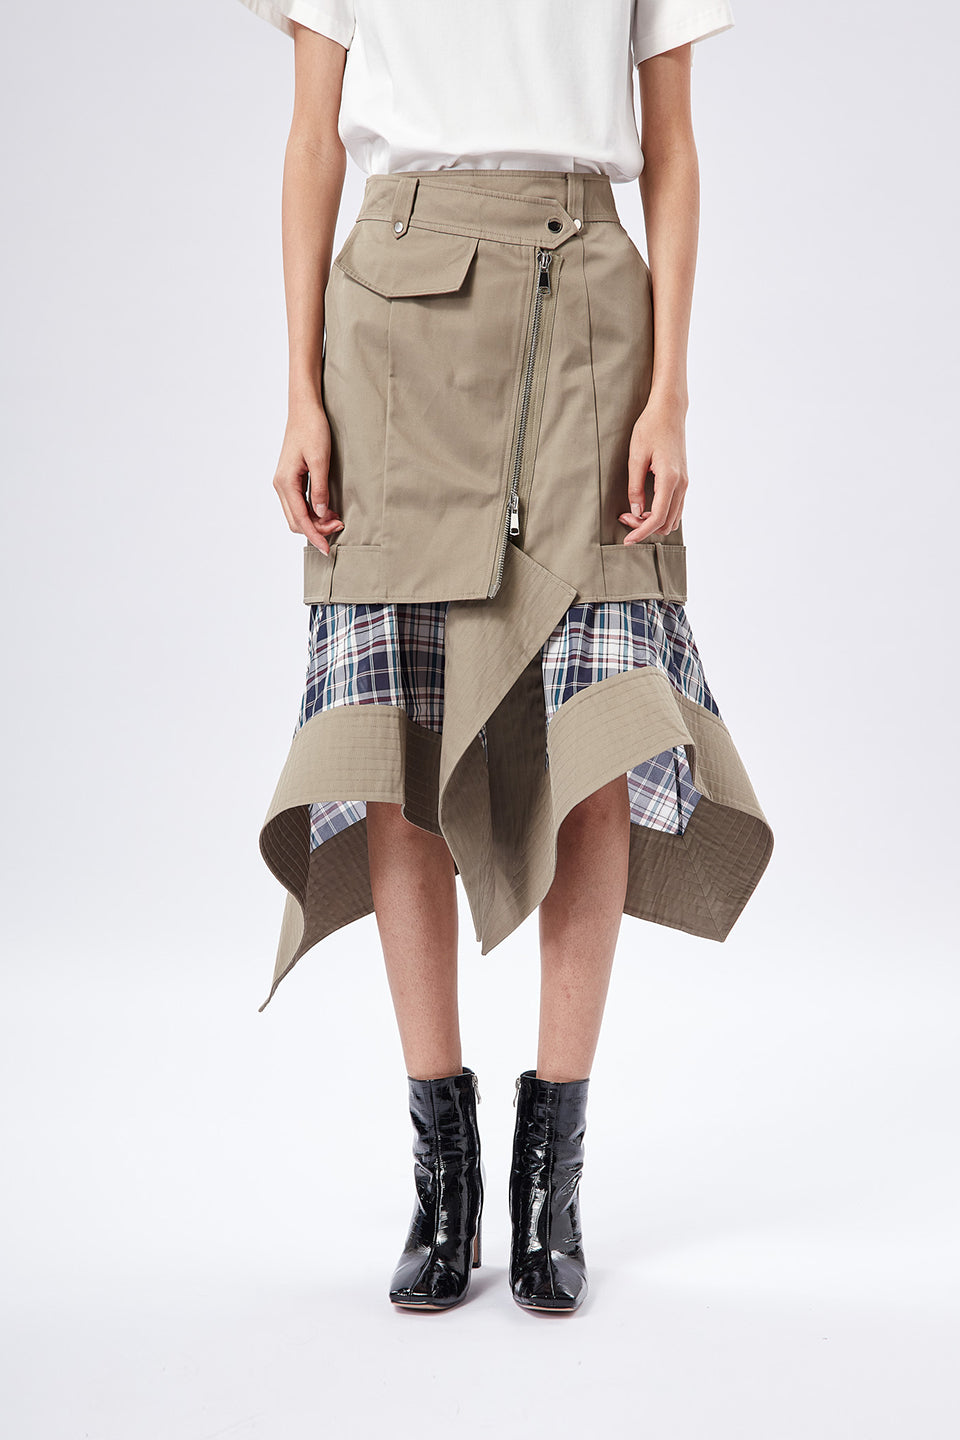 Feel So Good Peplum Skirt (Khaki)